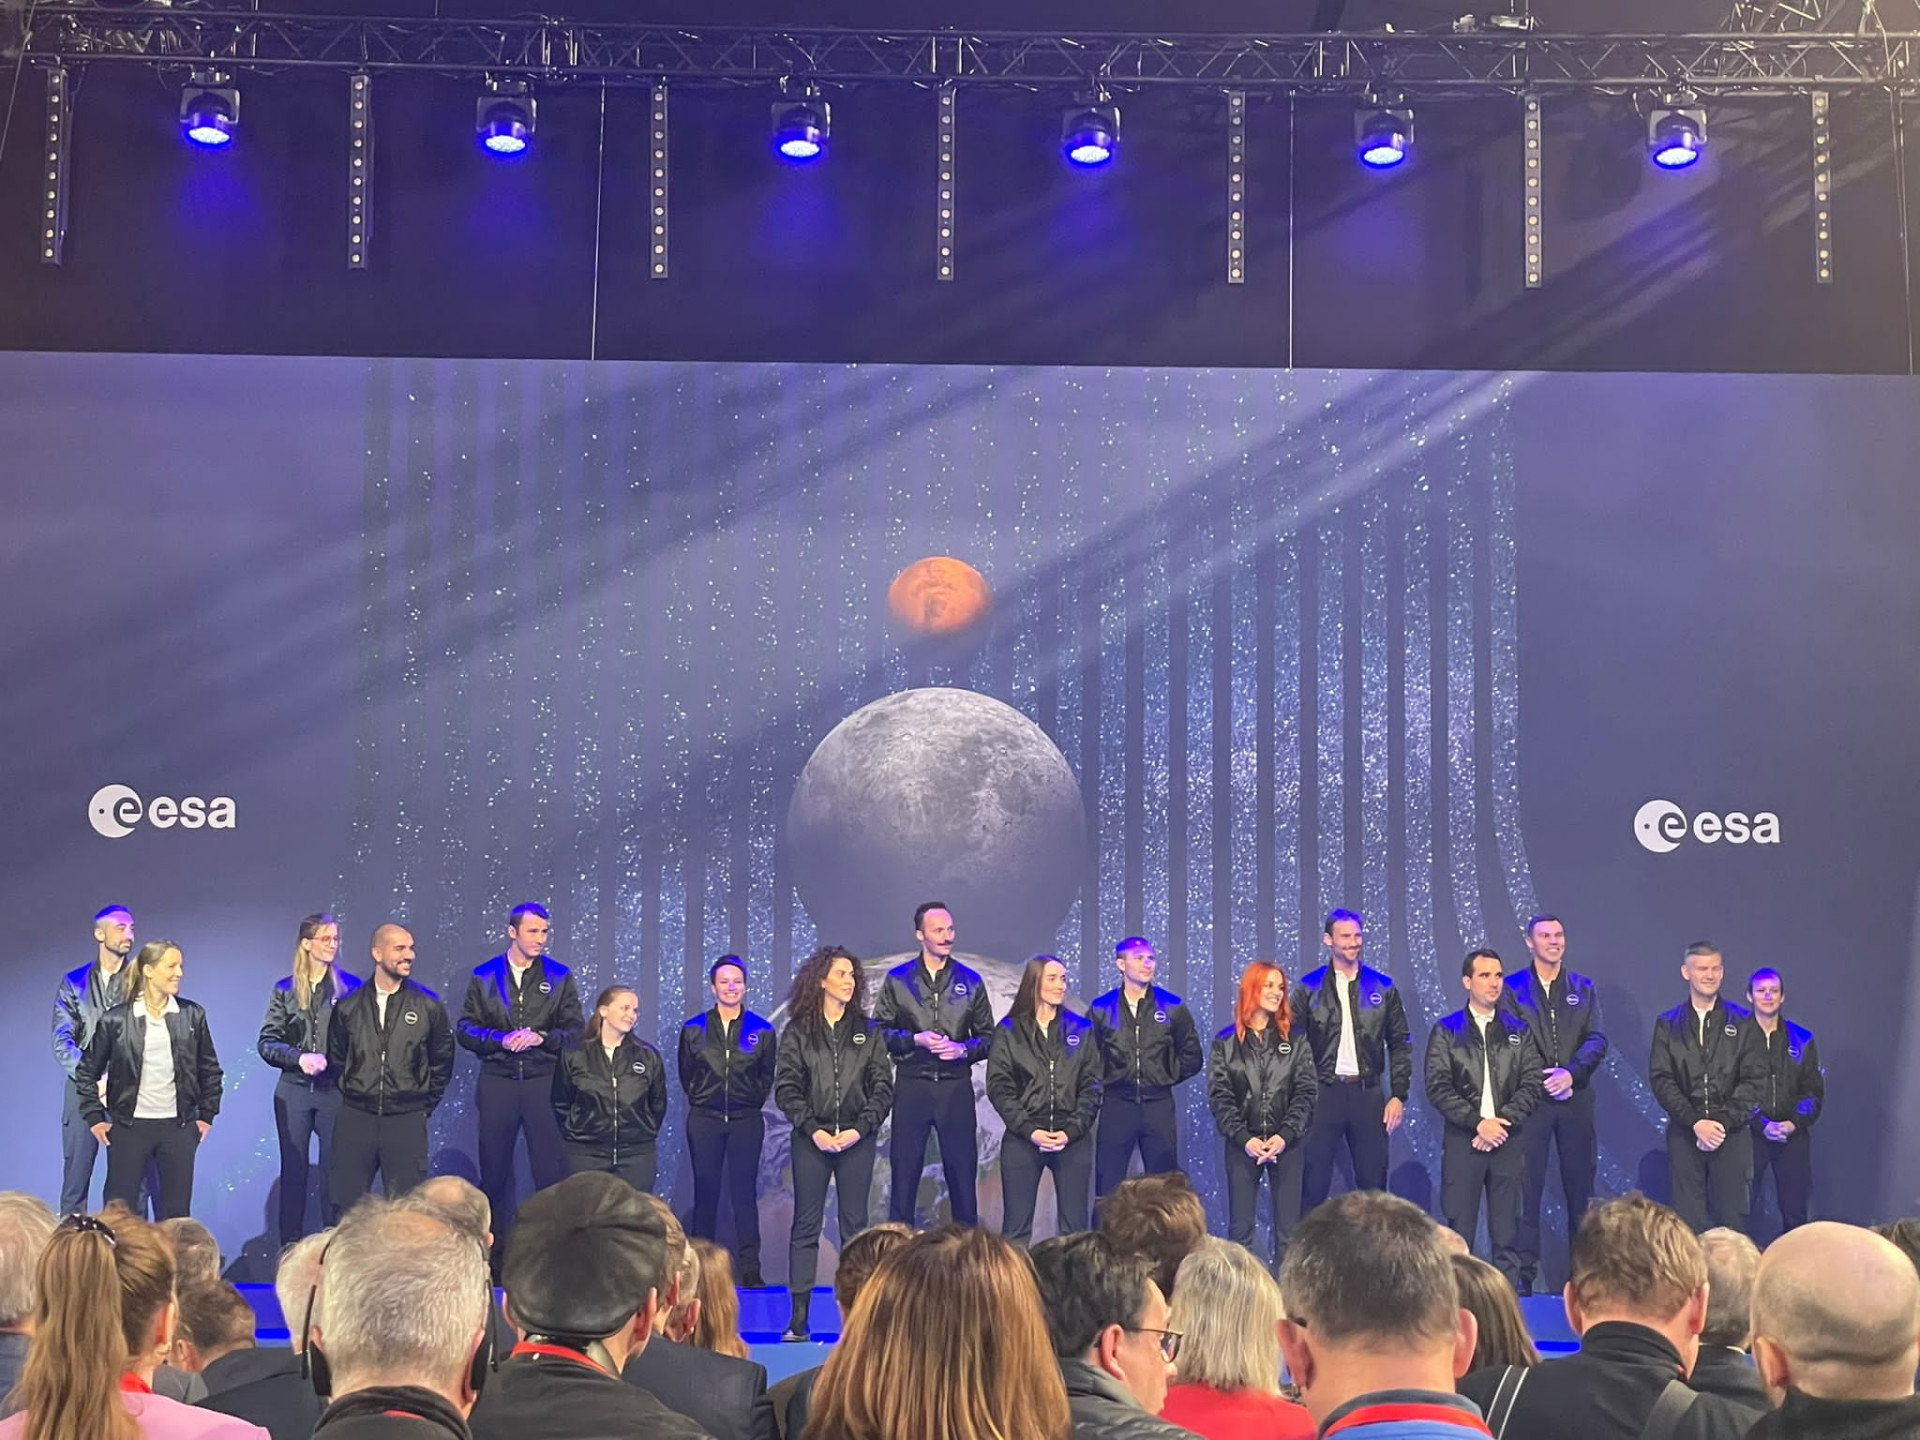 Grupo com vários Astronautas